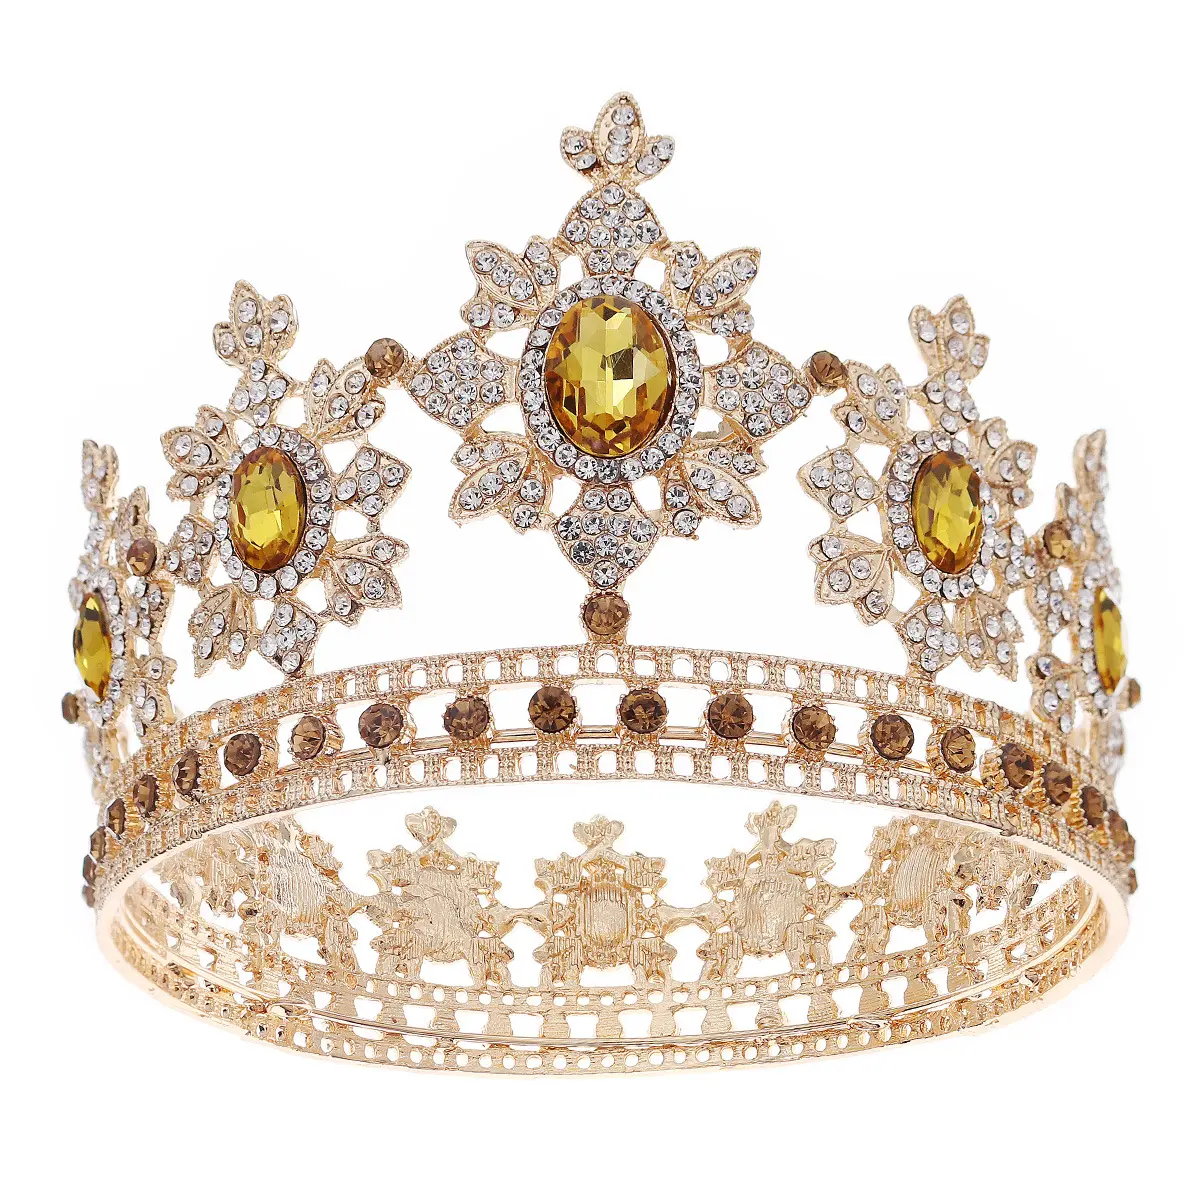 Coroa de noiva retrô, coroa de cristal completa para queens, coroa de casamento, elegante, luxo